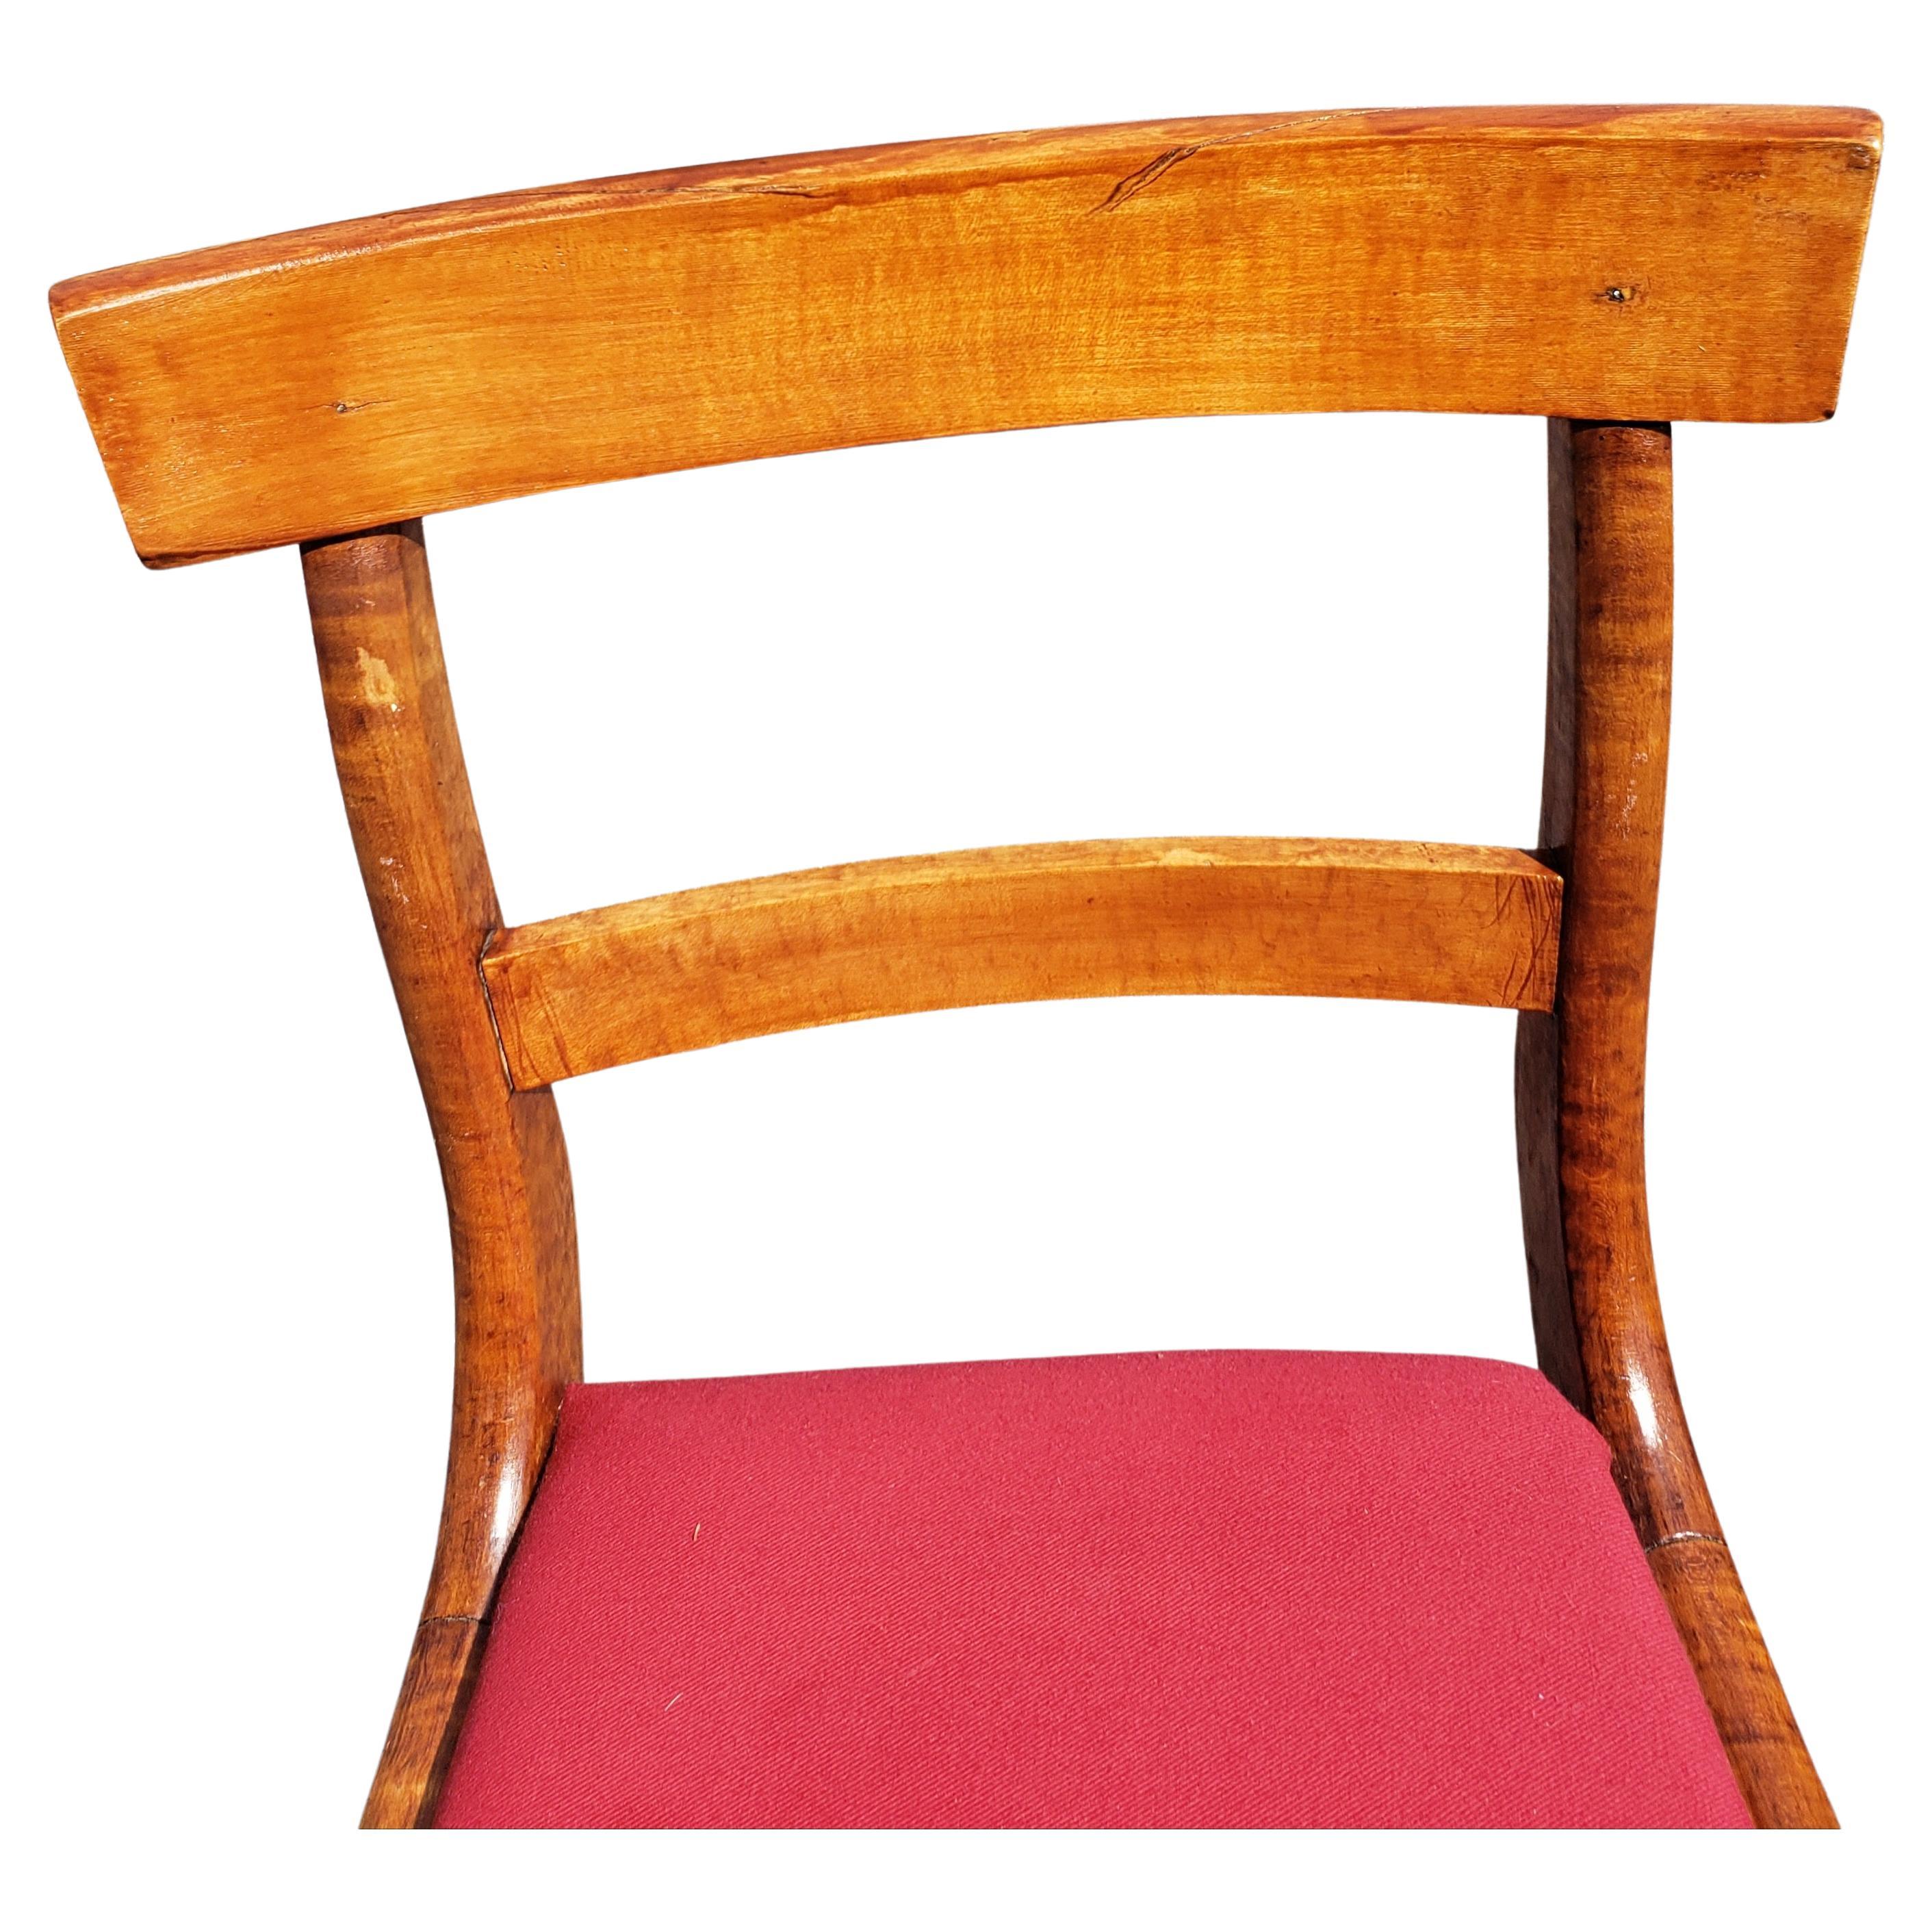 Ein sehr charmanter Duncan Phyfe Stuhl aus dem 19. Jahrhundert. Handgefertigt. Roter, brandneuer roter Samtbezug in Arbeit.
Maße: 18 